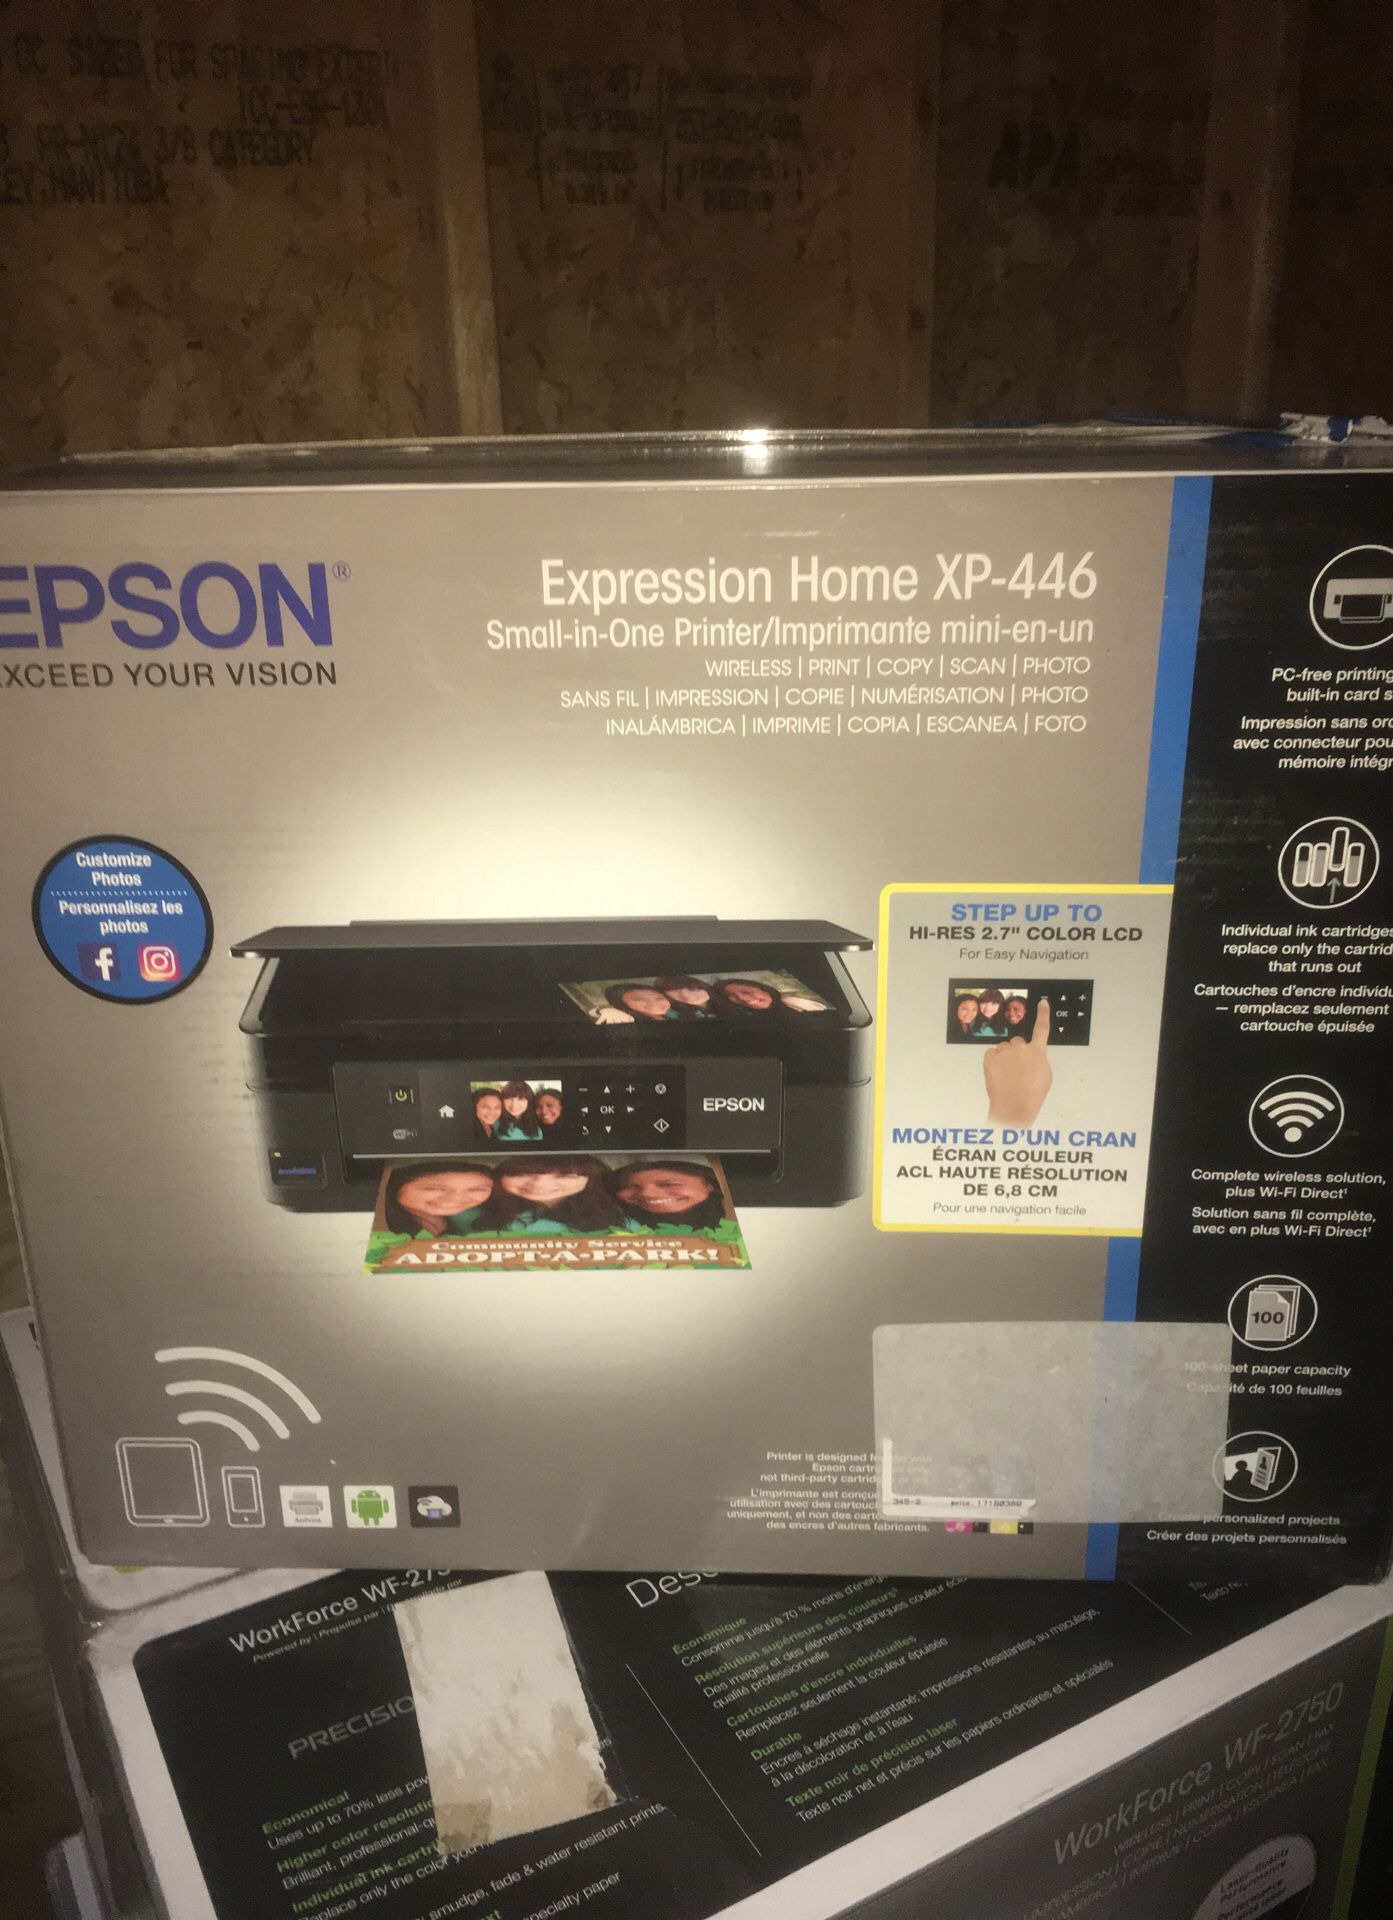 New epson printer xp-446